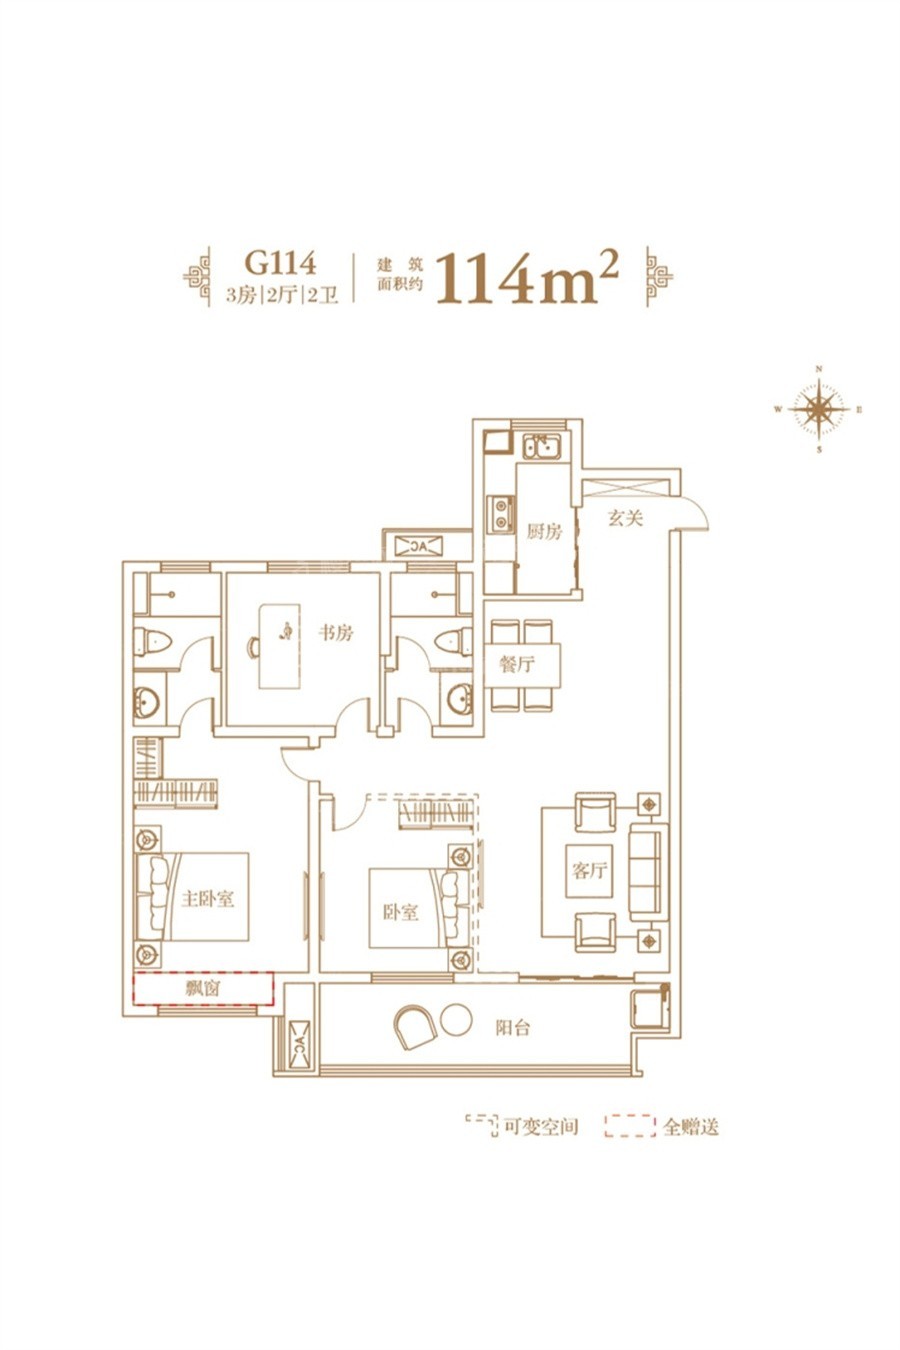 3室2厅2卫建筑面积114㎡